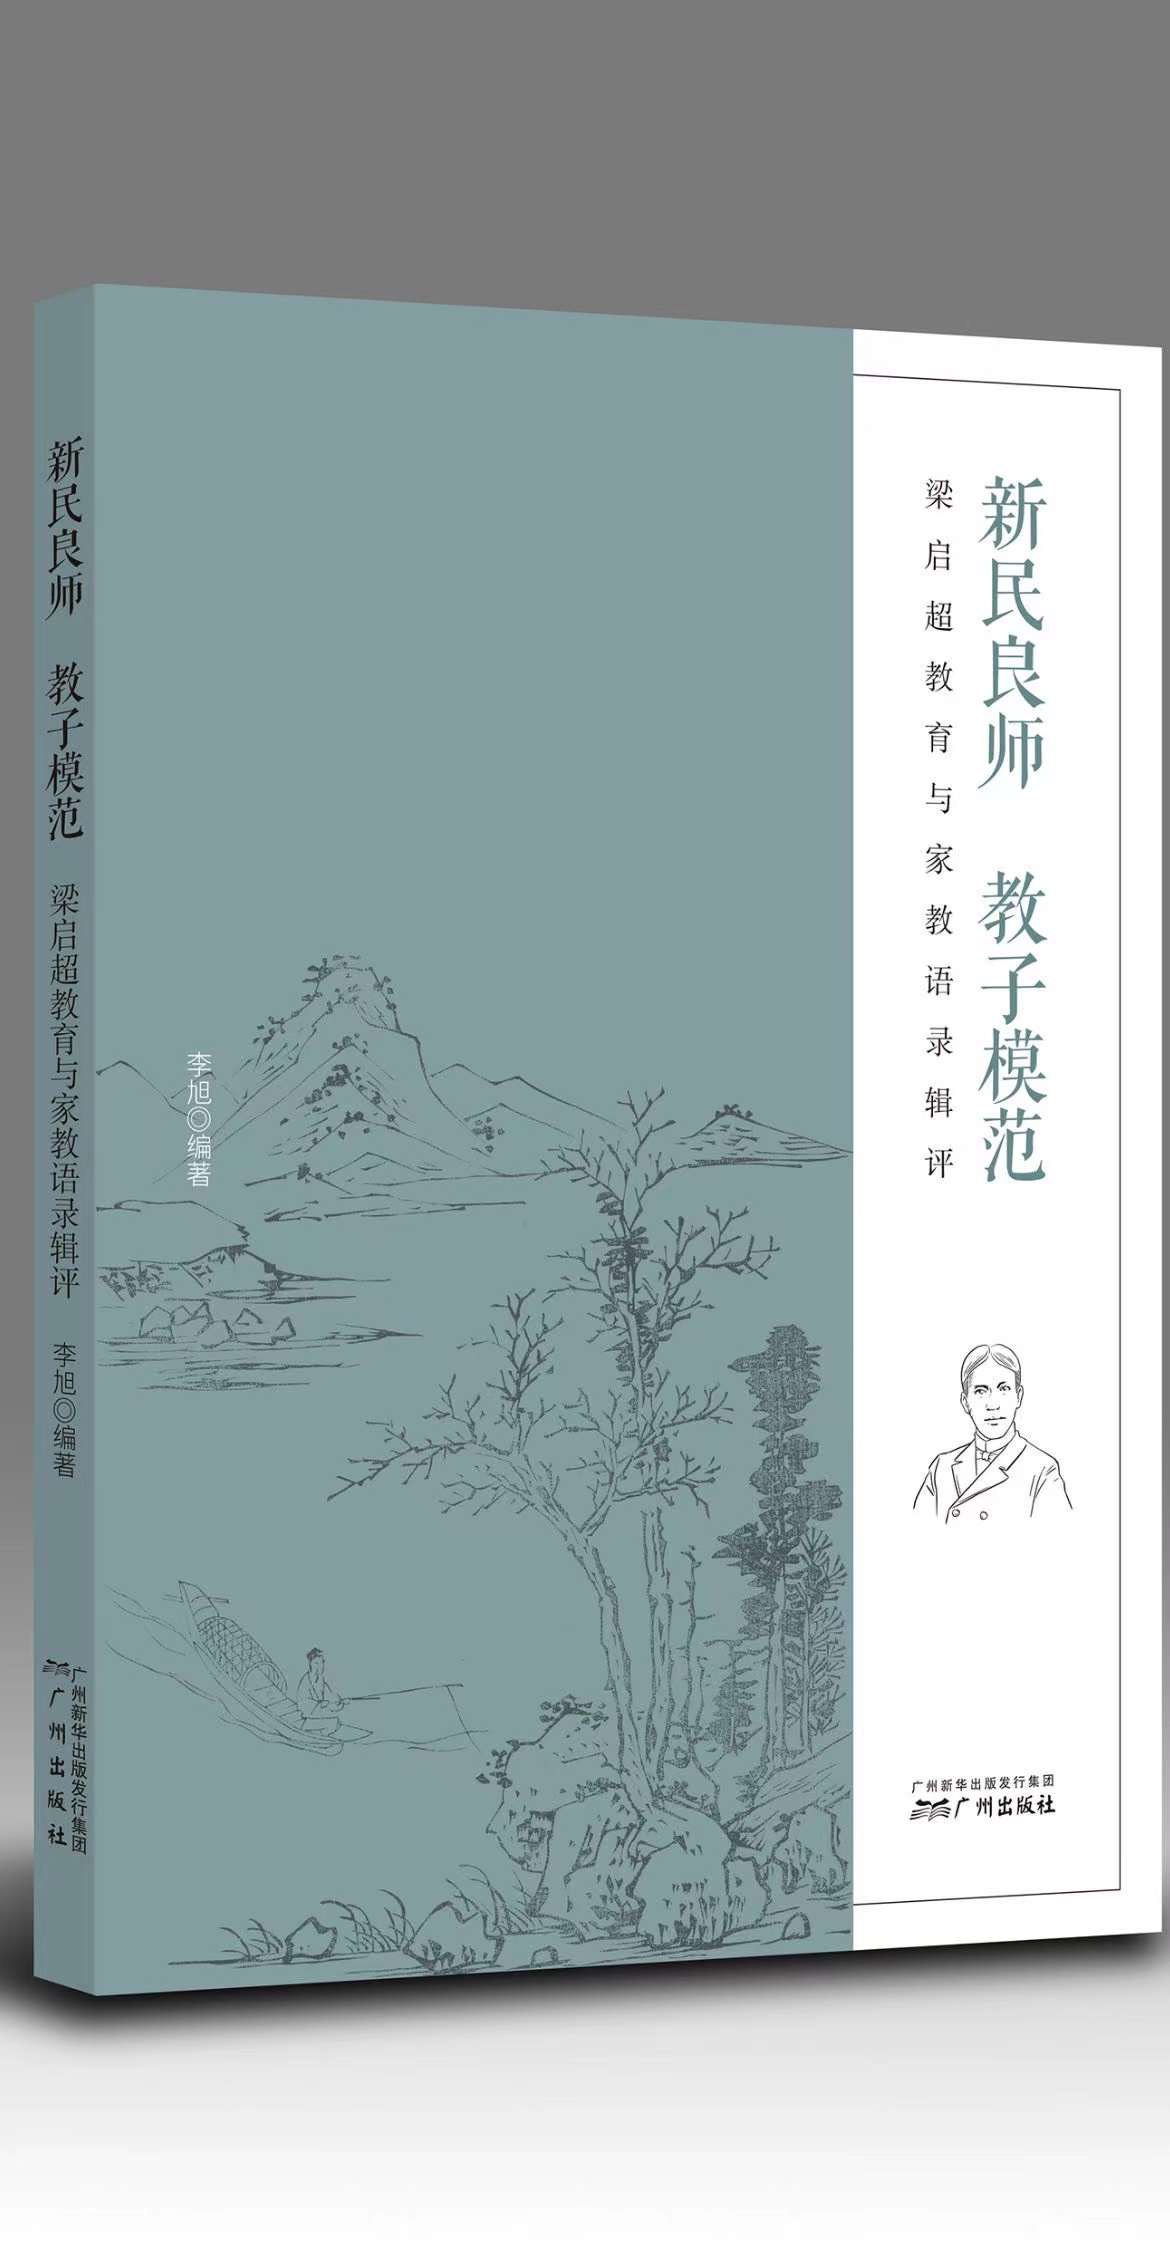 三名江门学者出版专著献礼梁启超先生诞辰150周年